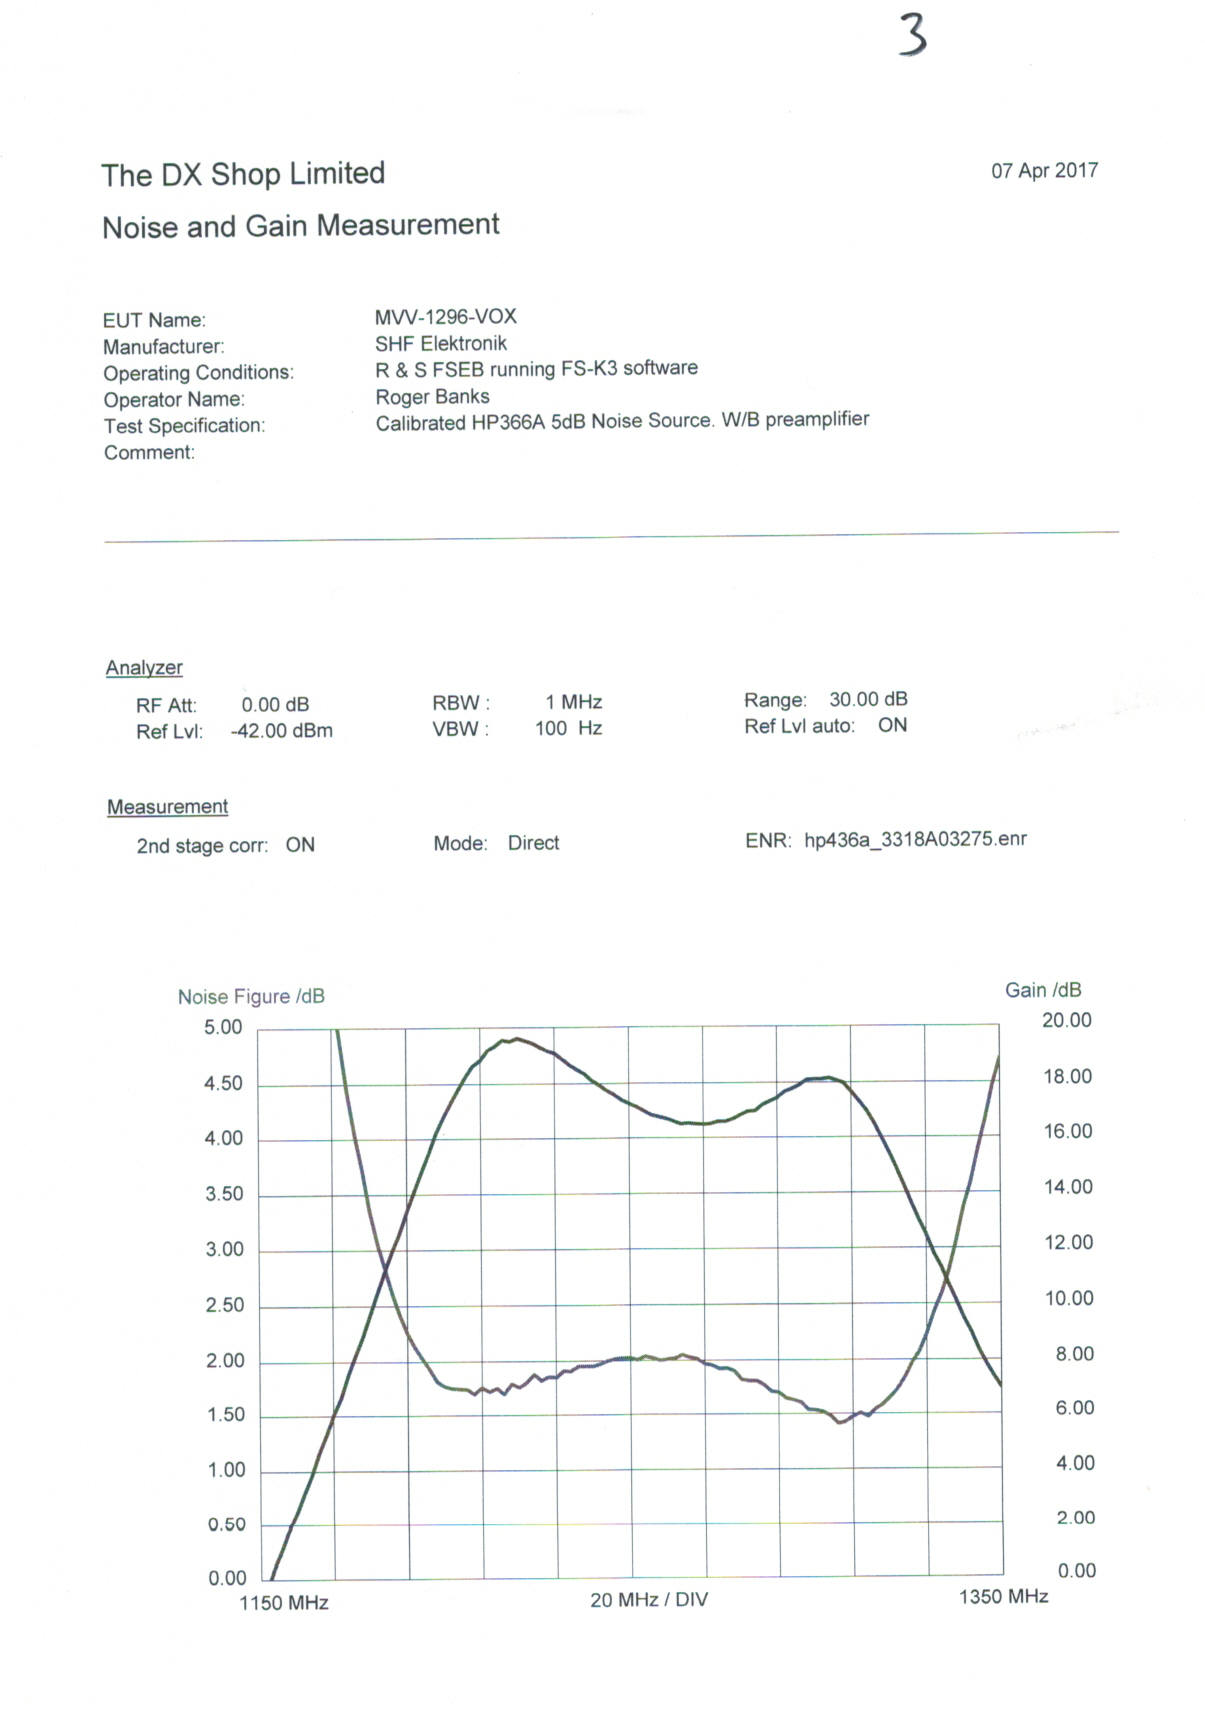 MVV-1296-VOX graph of noise vs gain